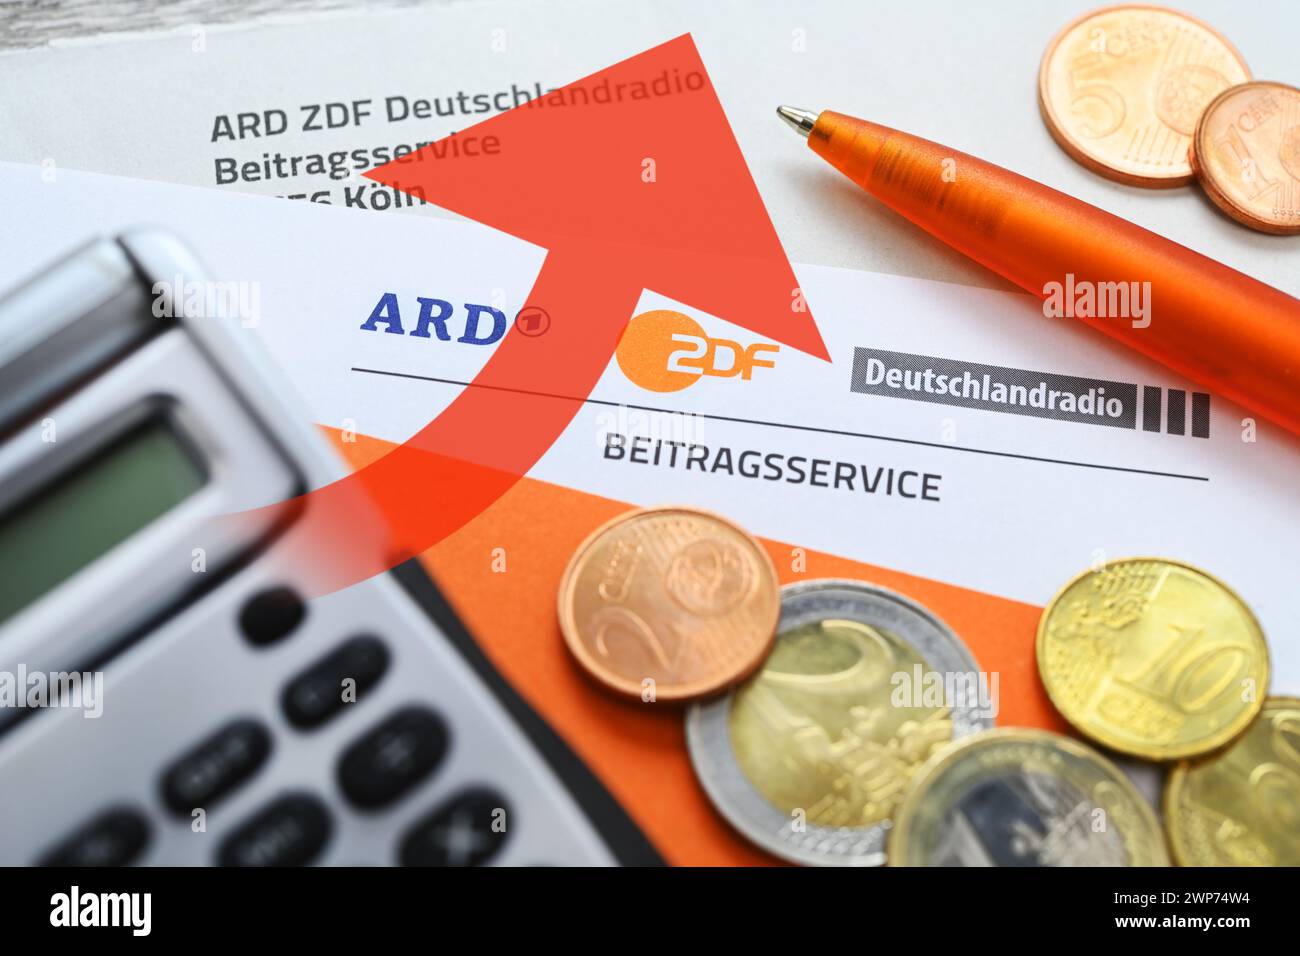 FOTOMONTAGE, Brief des ARD ZDF Deutschlandradio Beitragsservice mit Geldmünzen und ansteigendem Pfeil, Symbolfoto Erhöhung des Rundfunkbeitrags Foto Stock